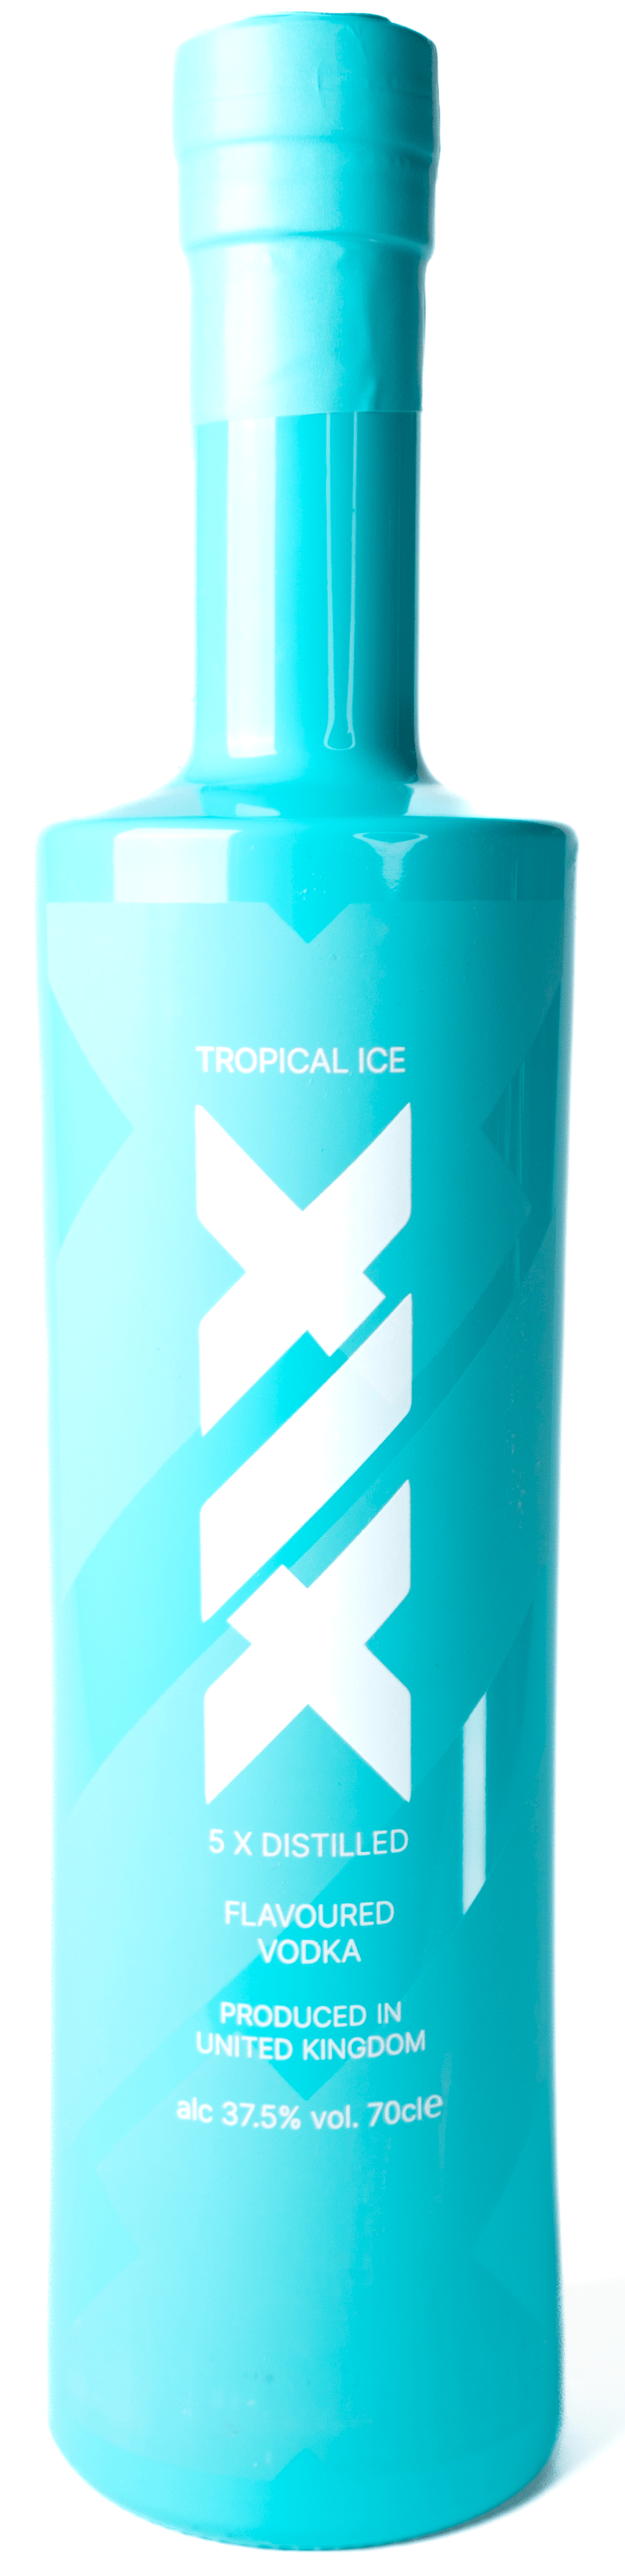 XIX Tropical Ice Vodka 70cl